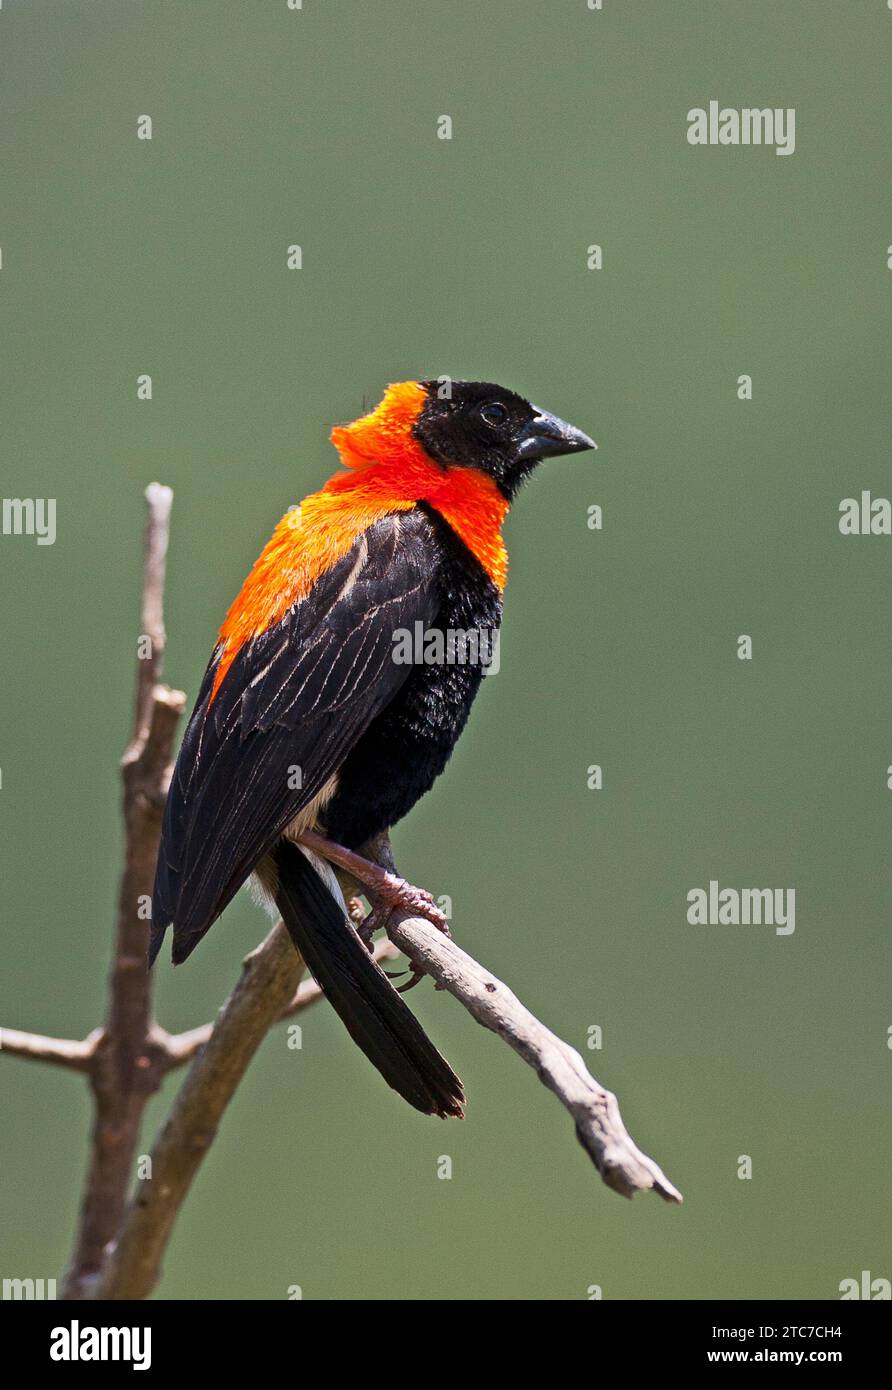 Der Schwarze Bischof (Euplectes gierowii) ist eine Art von Passerinvogel aus der Familie der Ploceidae, die in Afrika südlich der Sahara beheimatet ist. Stockfoto